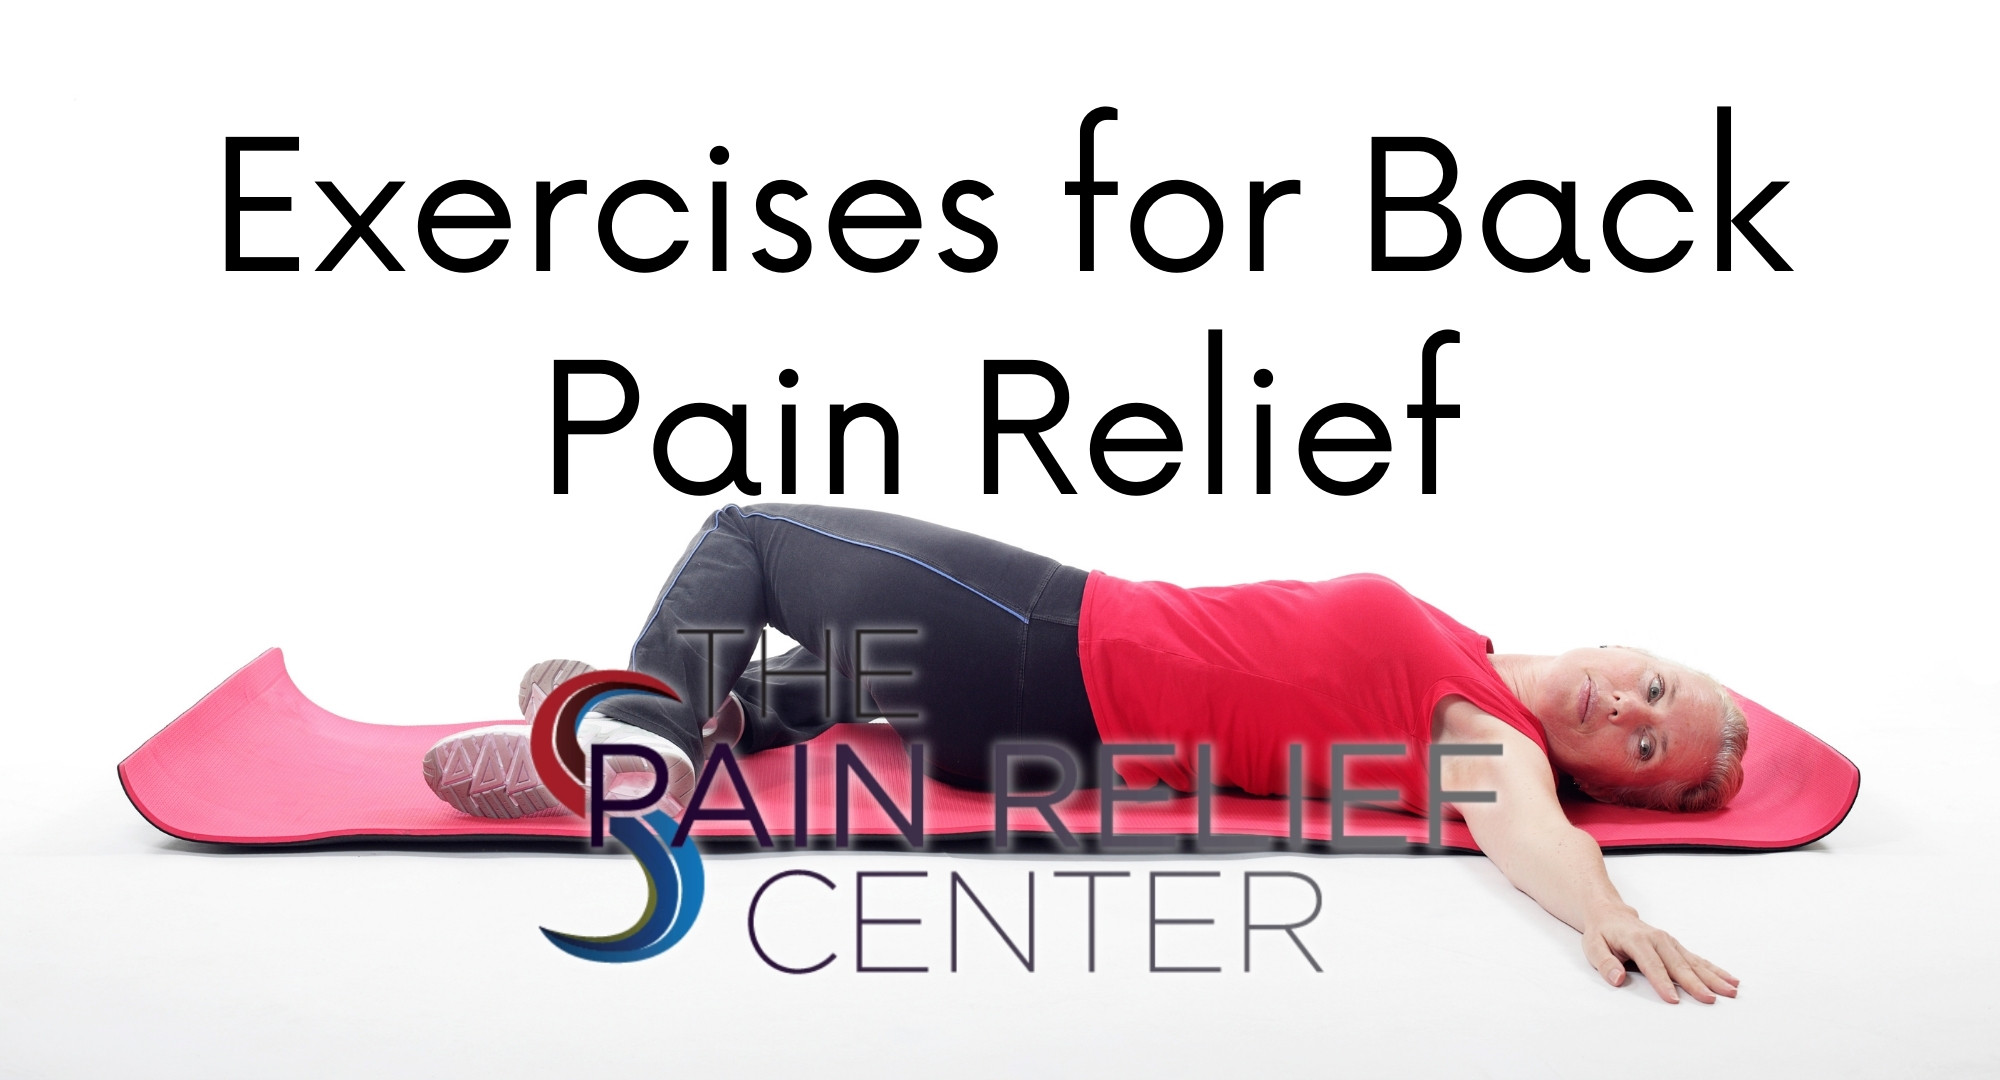 https://painendshere.com/wp-content/uploads/2014/06/exercises-for-back-pain.jpg